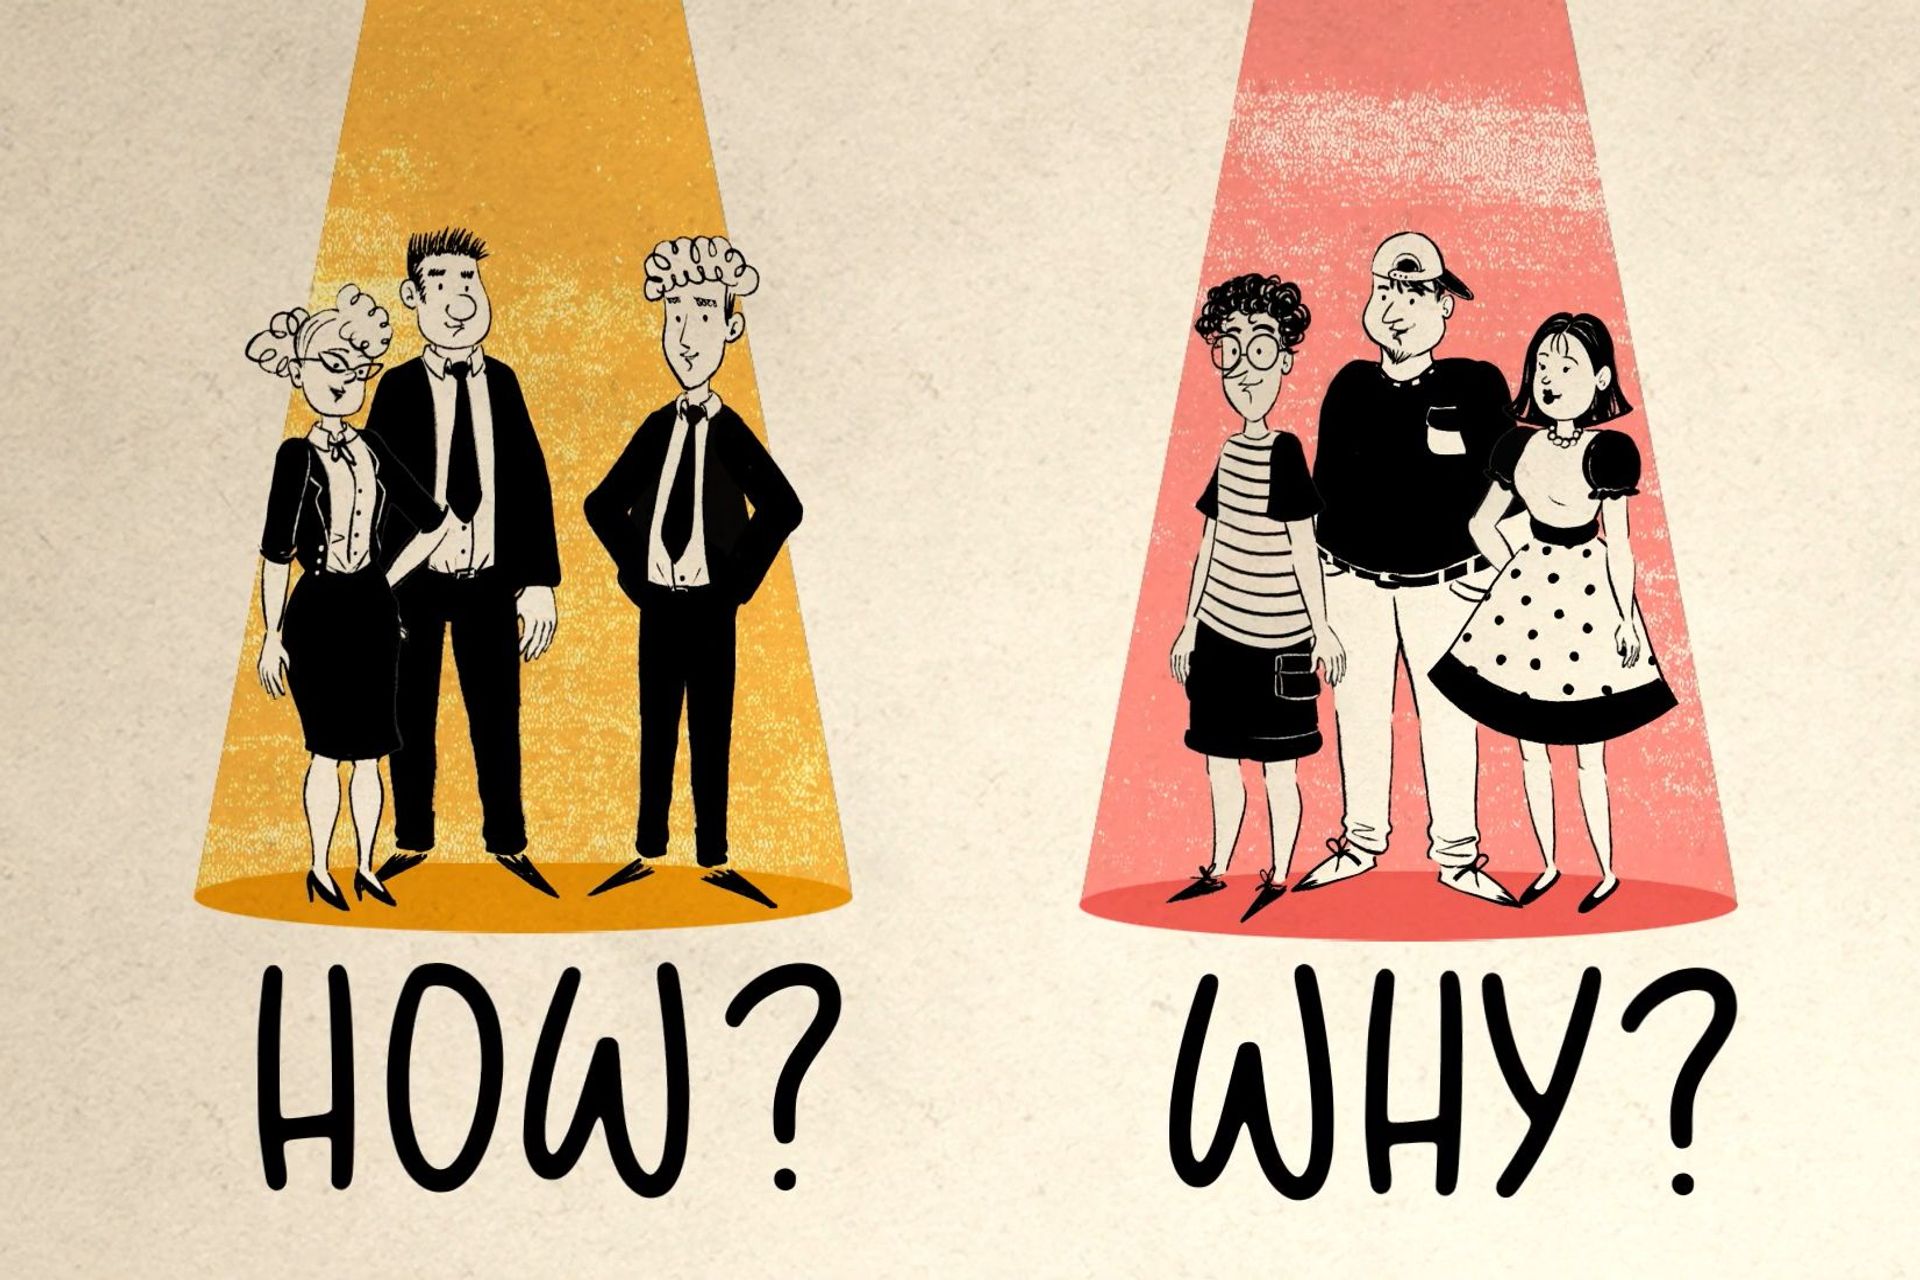 Dilemmaet mellom "How" og "Why" på engelsk i forhold til to forskjellige typer publikum